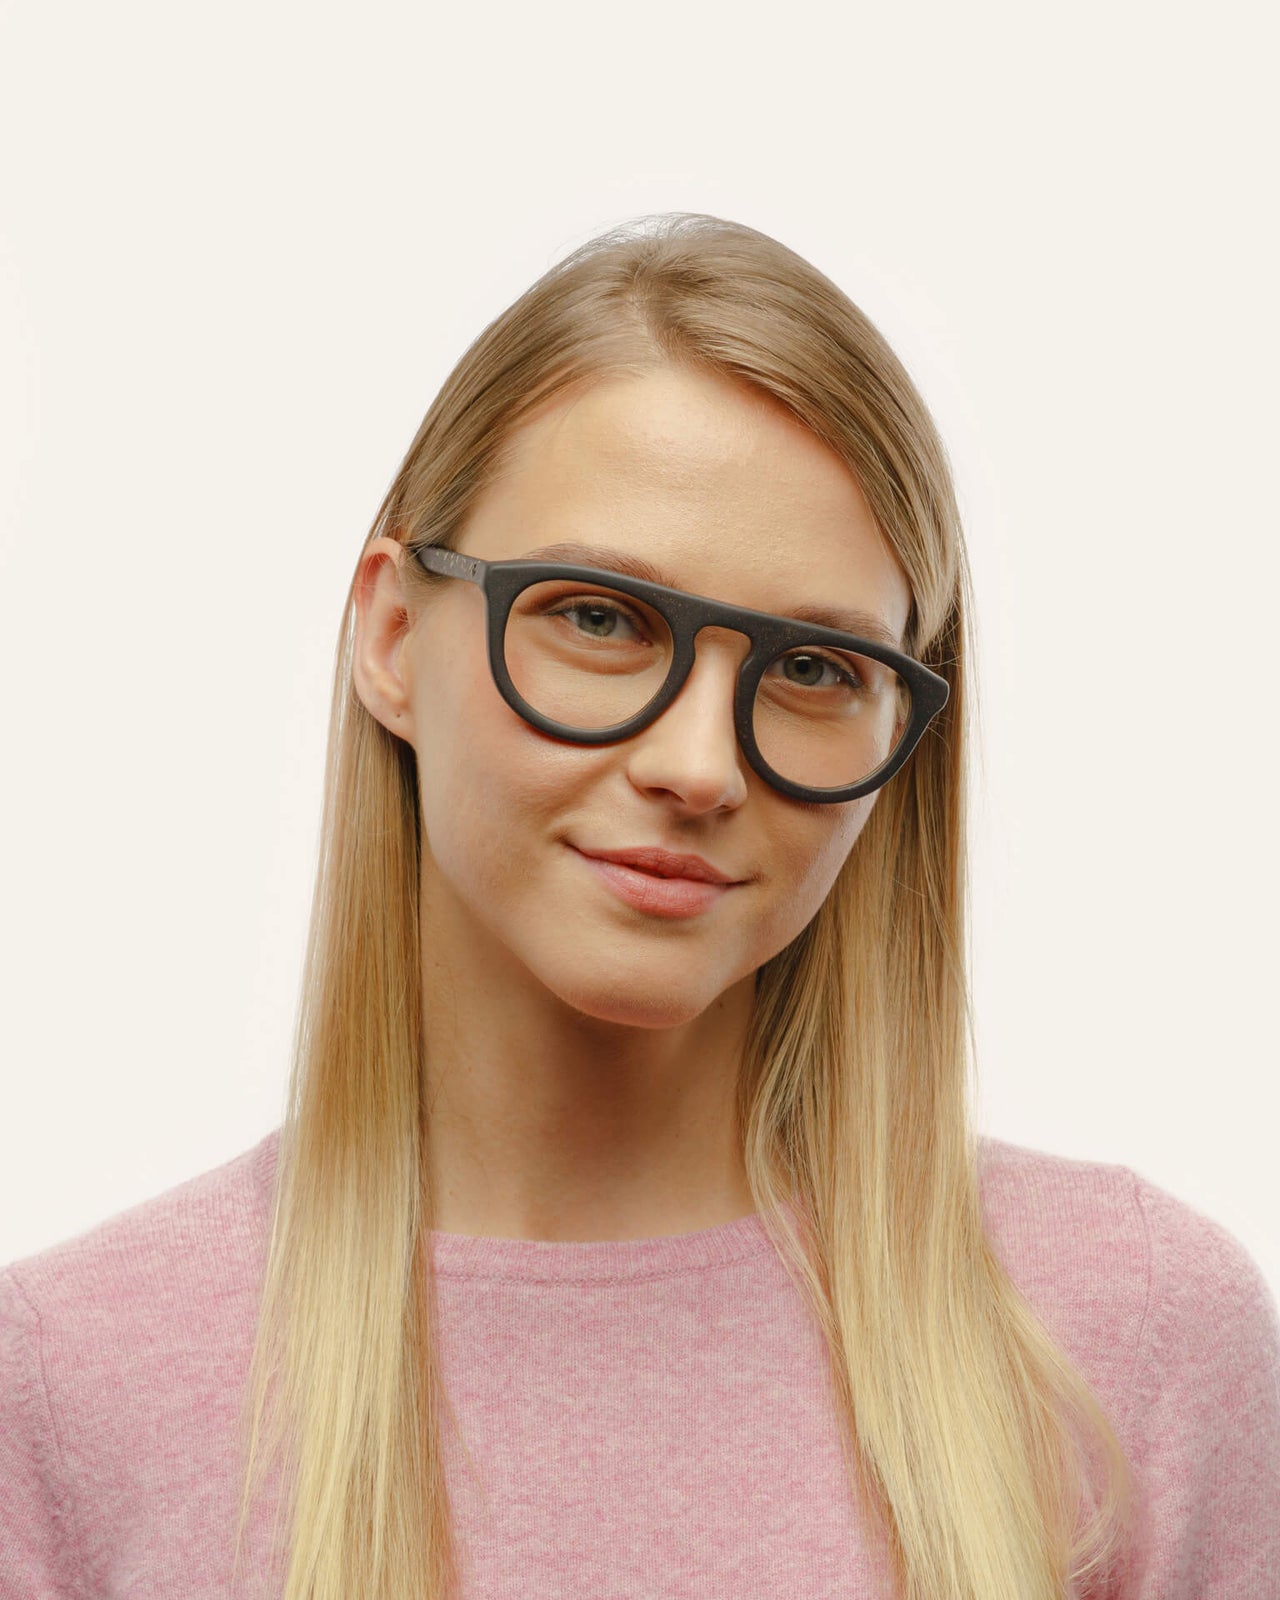 160 Best Unique Prescription Eyeglasses ideas  eyeglasses, prescription  eyeglasses, prescription eyewear